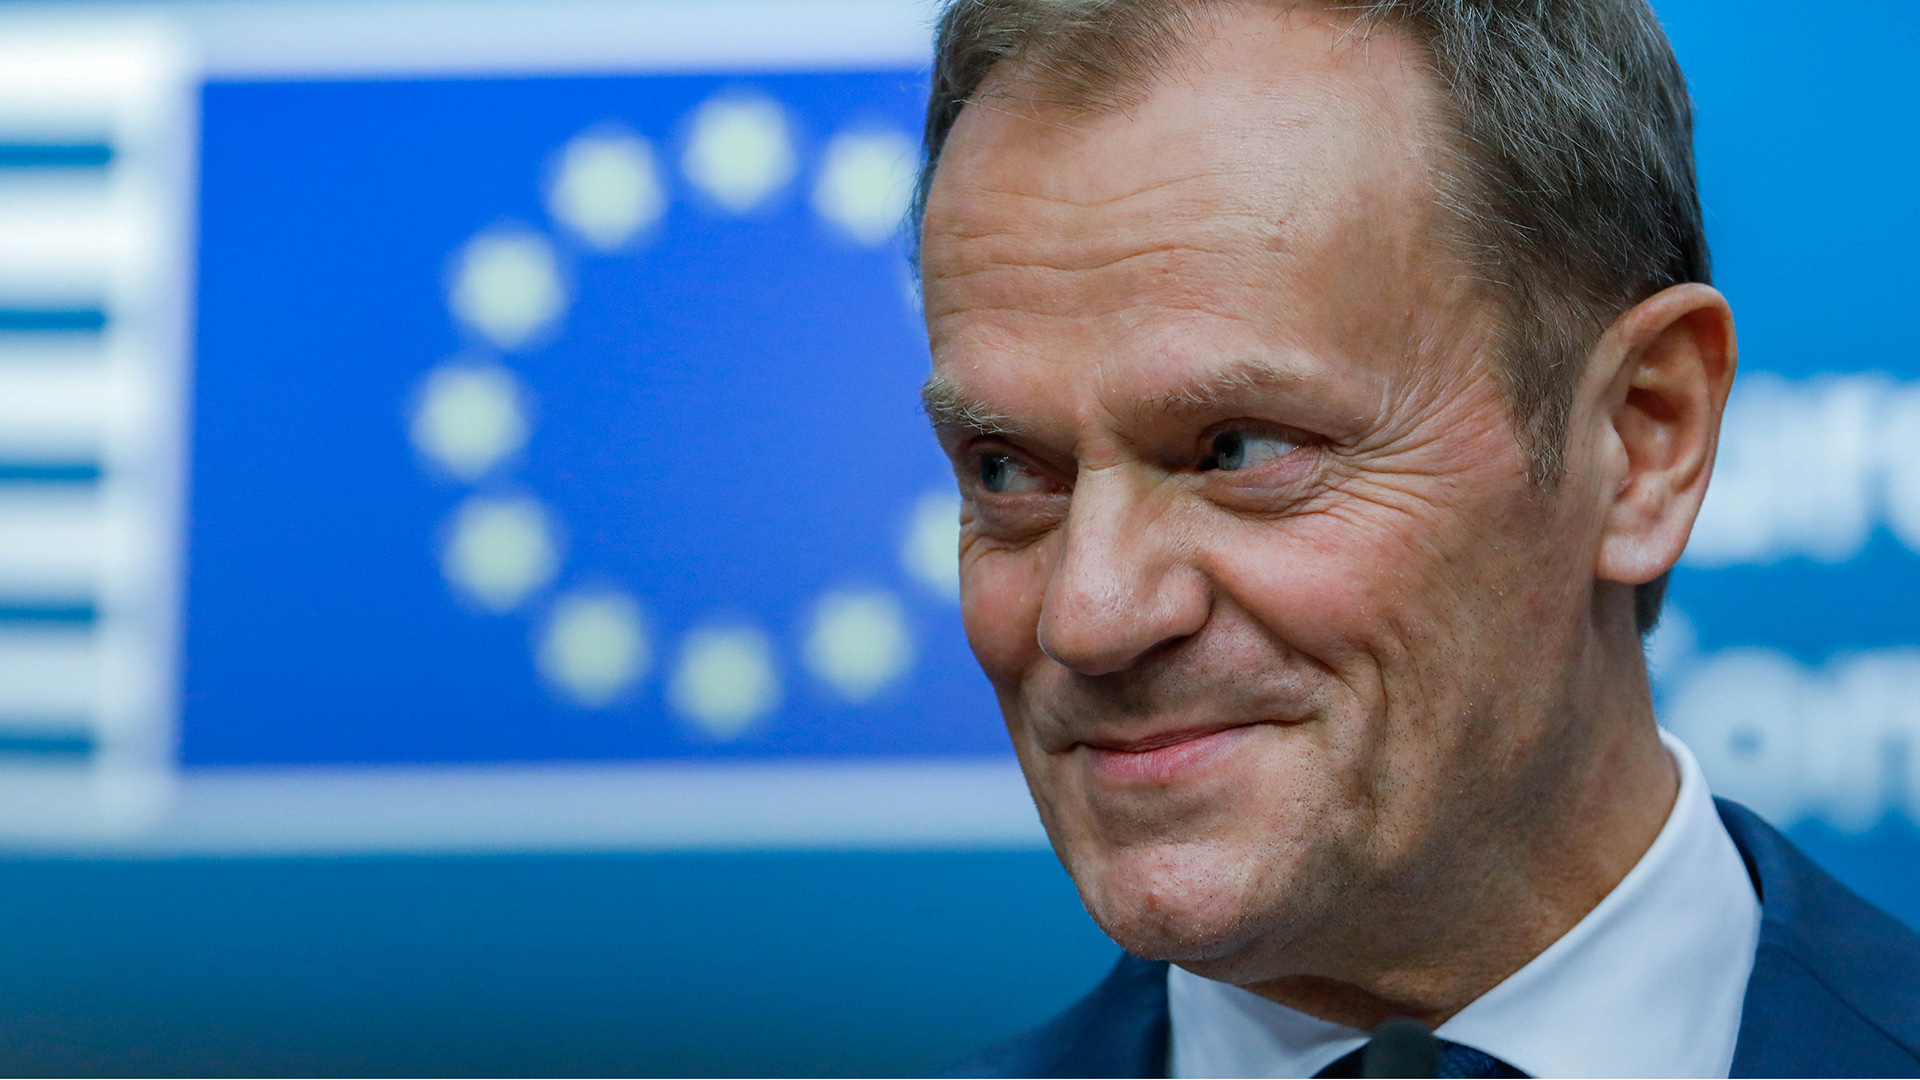 Tusk asegura que la UE no se dejará "intimidar por amenazas" en negociaciones del Brexit